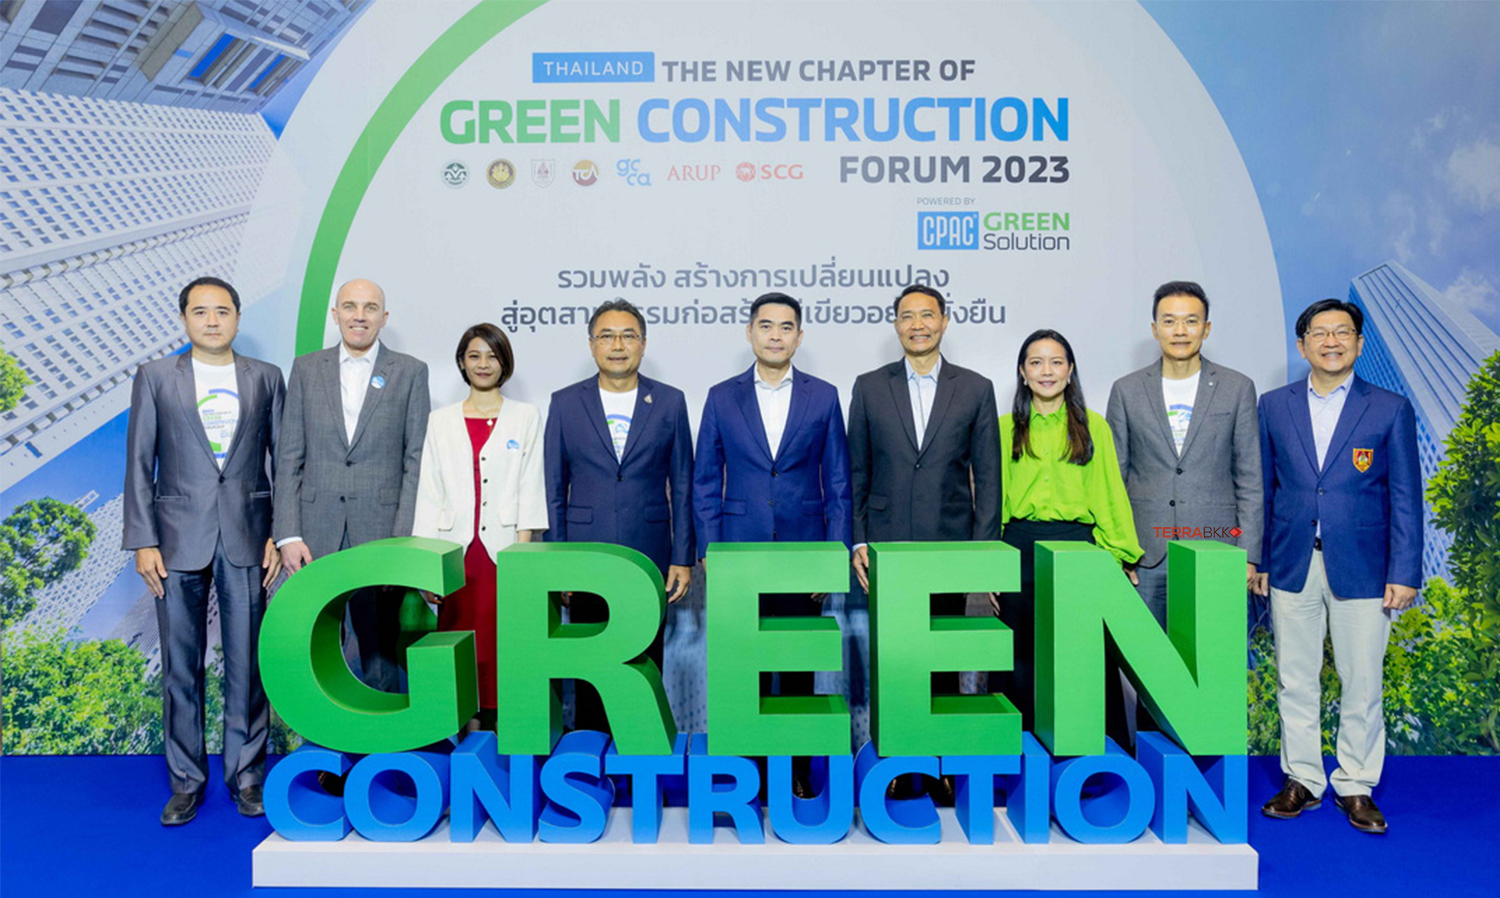 CPAC Green Solution ผนึกภาครัฐ-เอกชน กระตุ้นอุตสาหกรรมก่อสร้างทุกภาคส่วนมุ่งสู่ NET ZERO